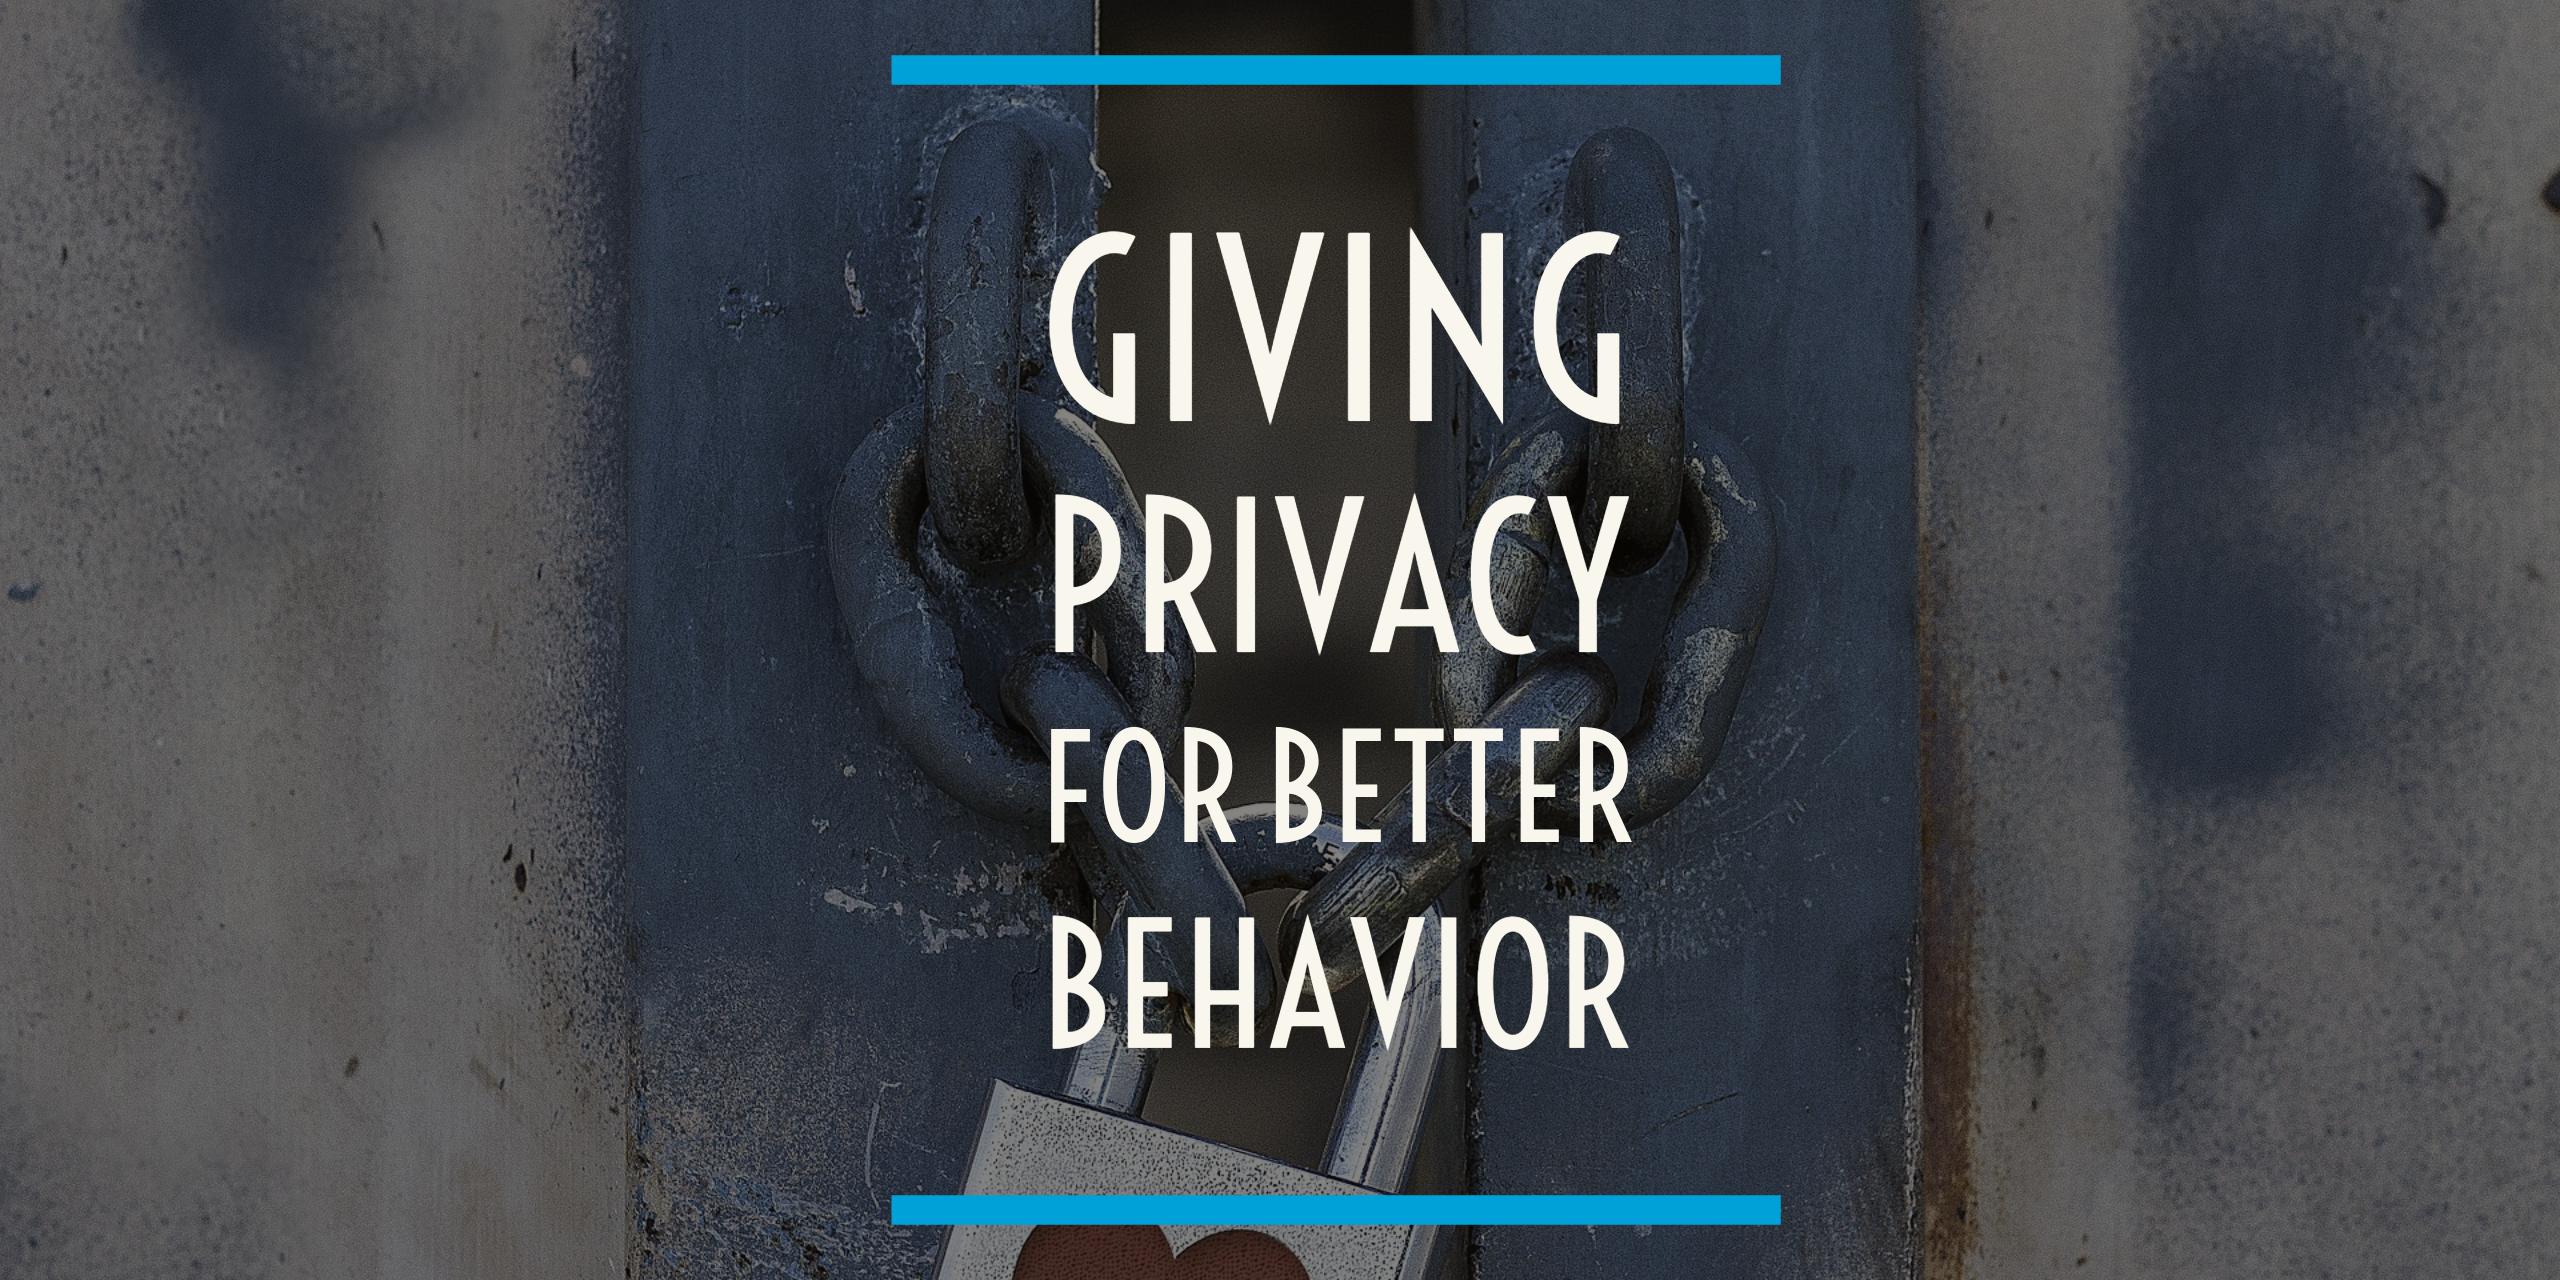 Giving privacy for better behavior